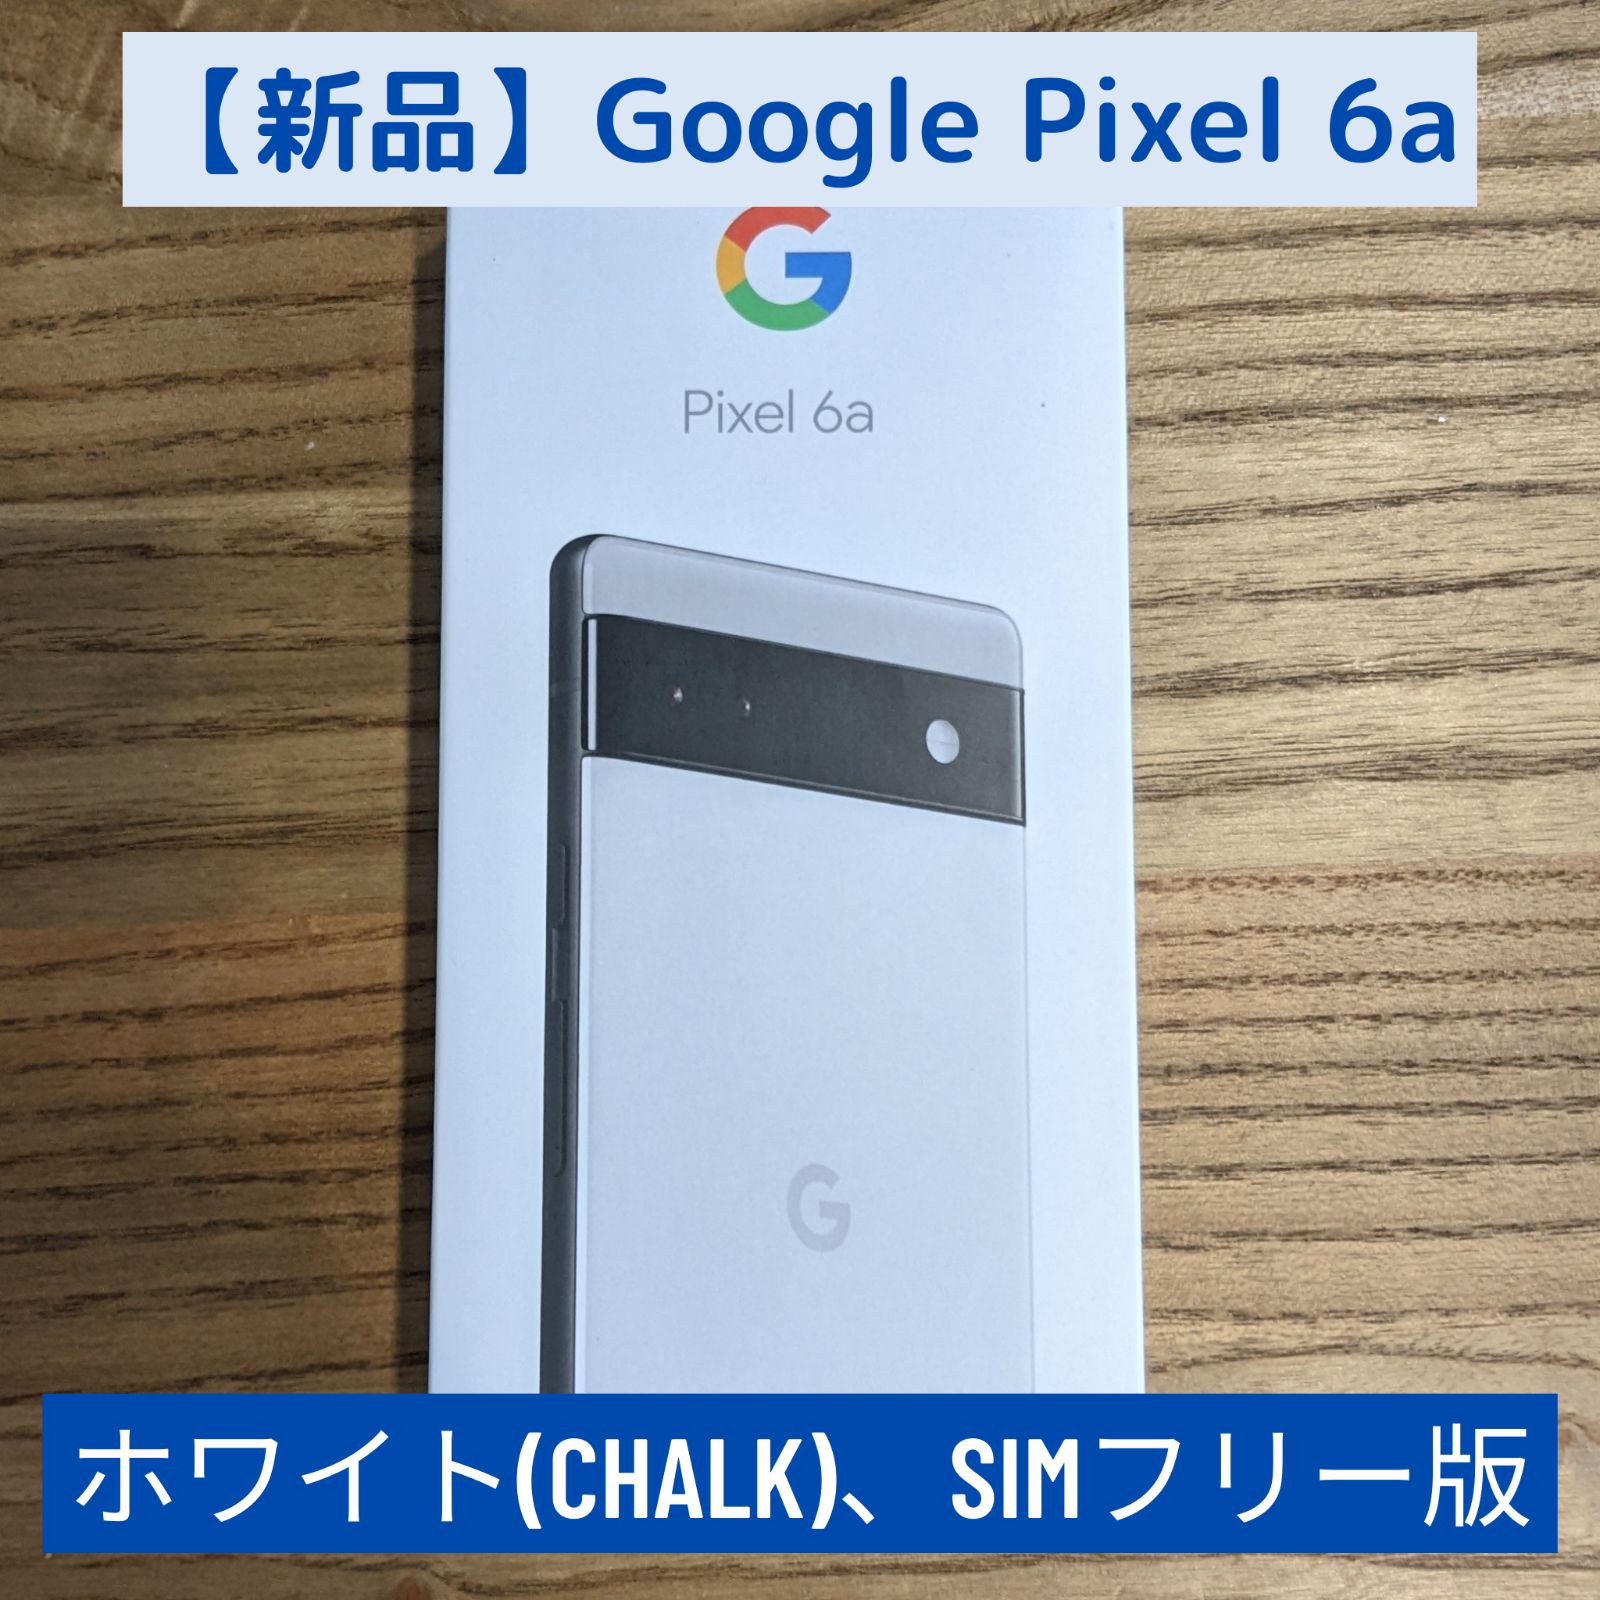 【新品未使用】Google Pixel 6a Chalk ホワイト simフリー